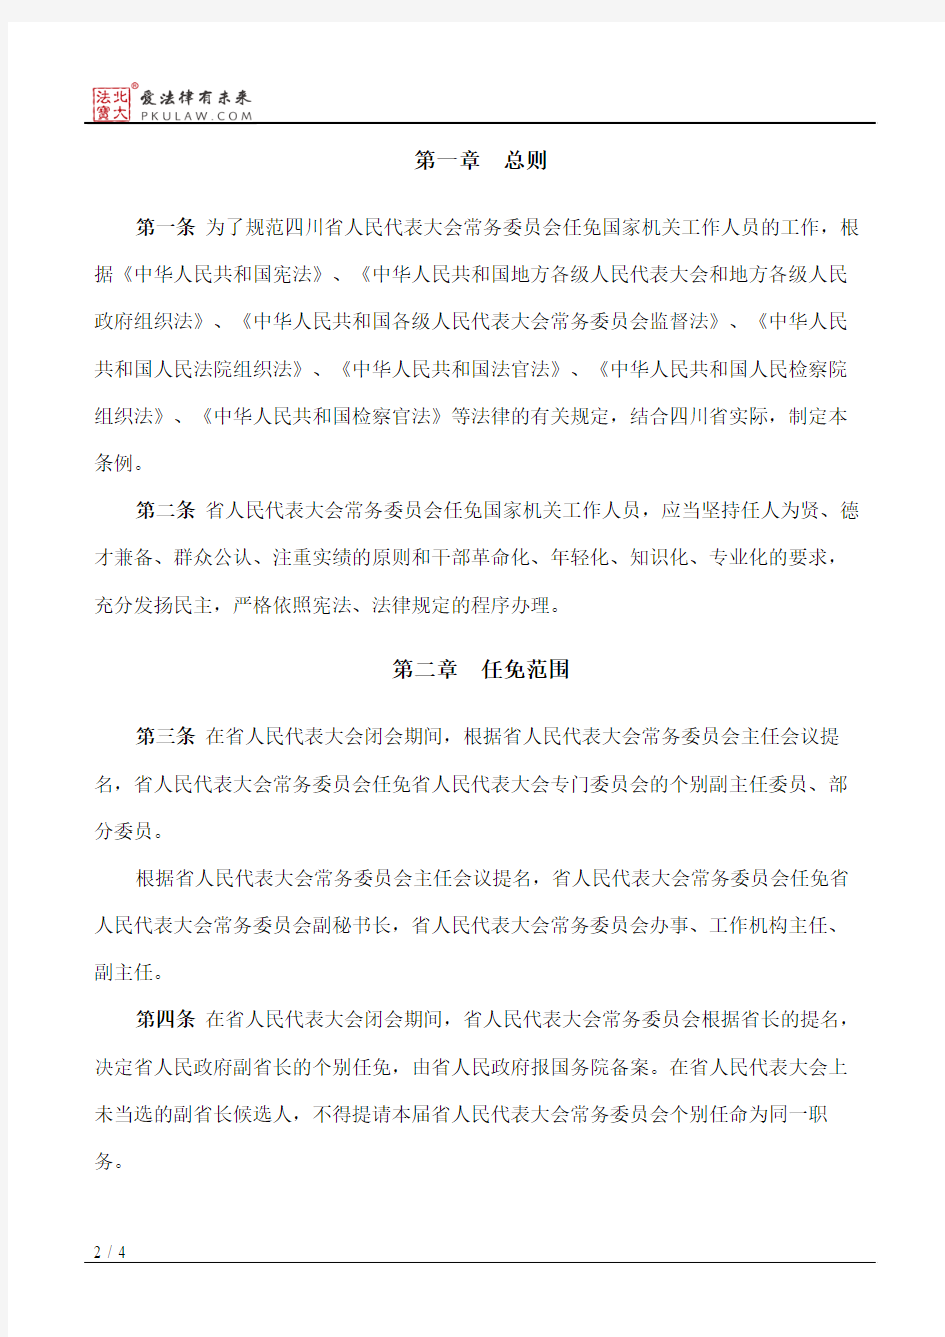 四川省人民代表大会常务委员会任免国家机关工作人员条例(2012修正)